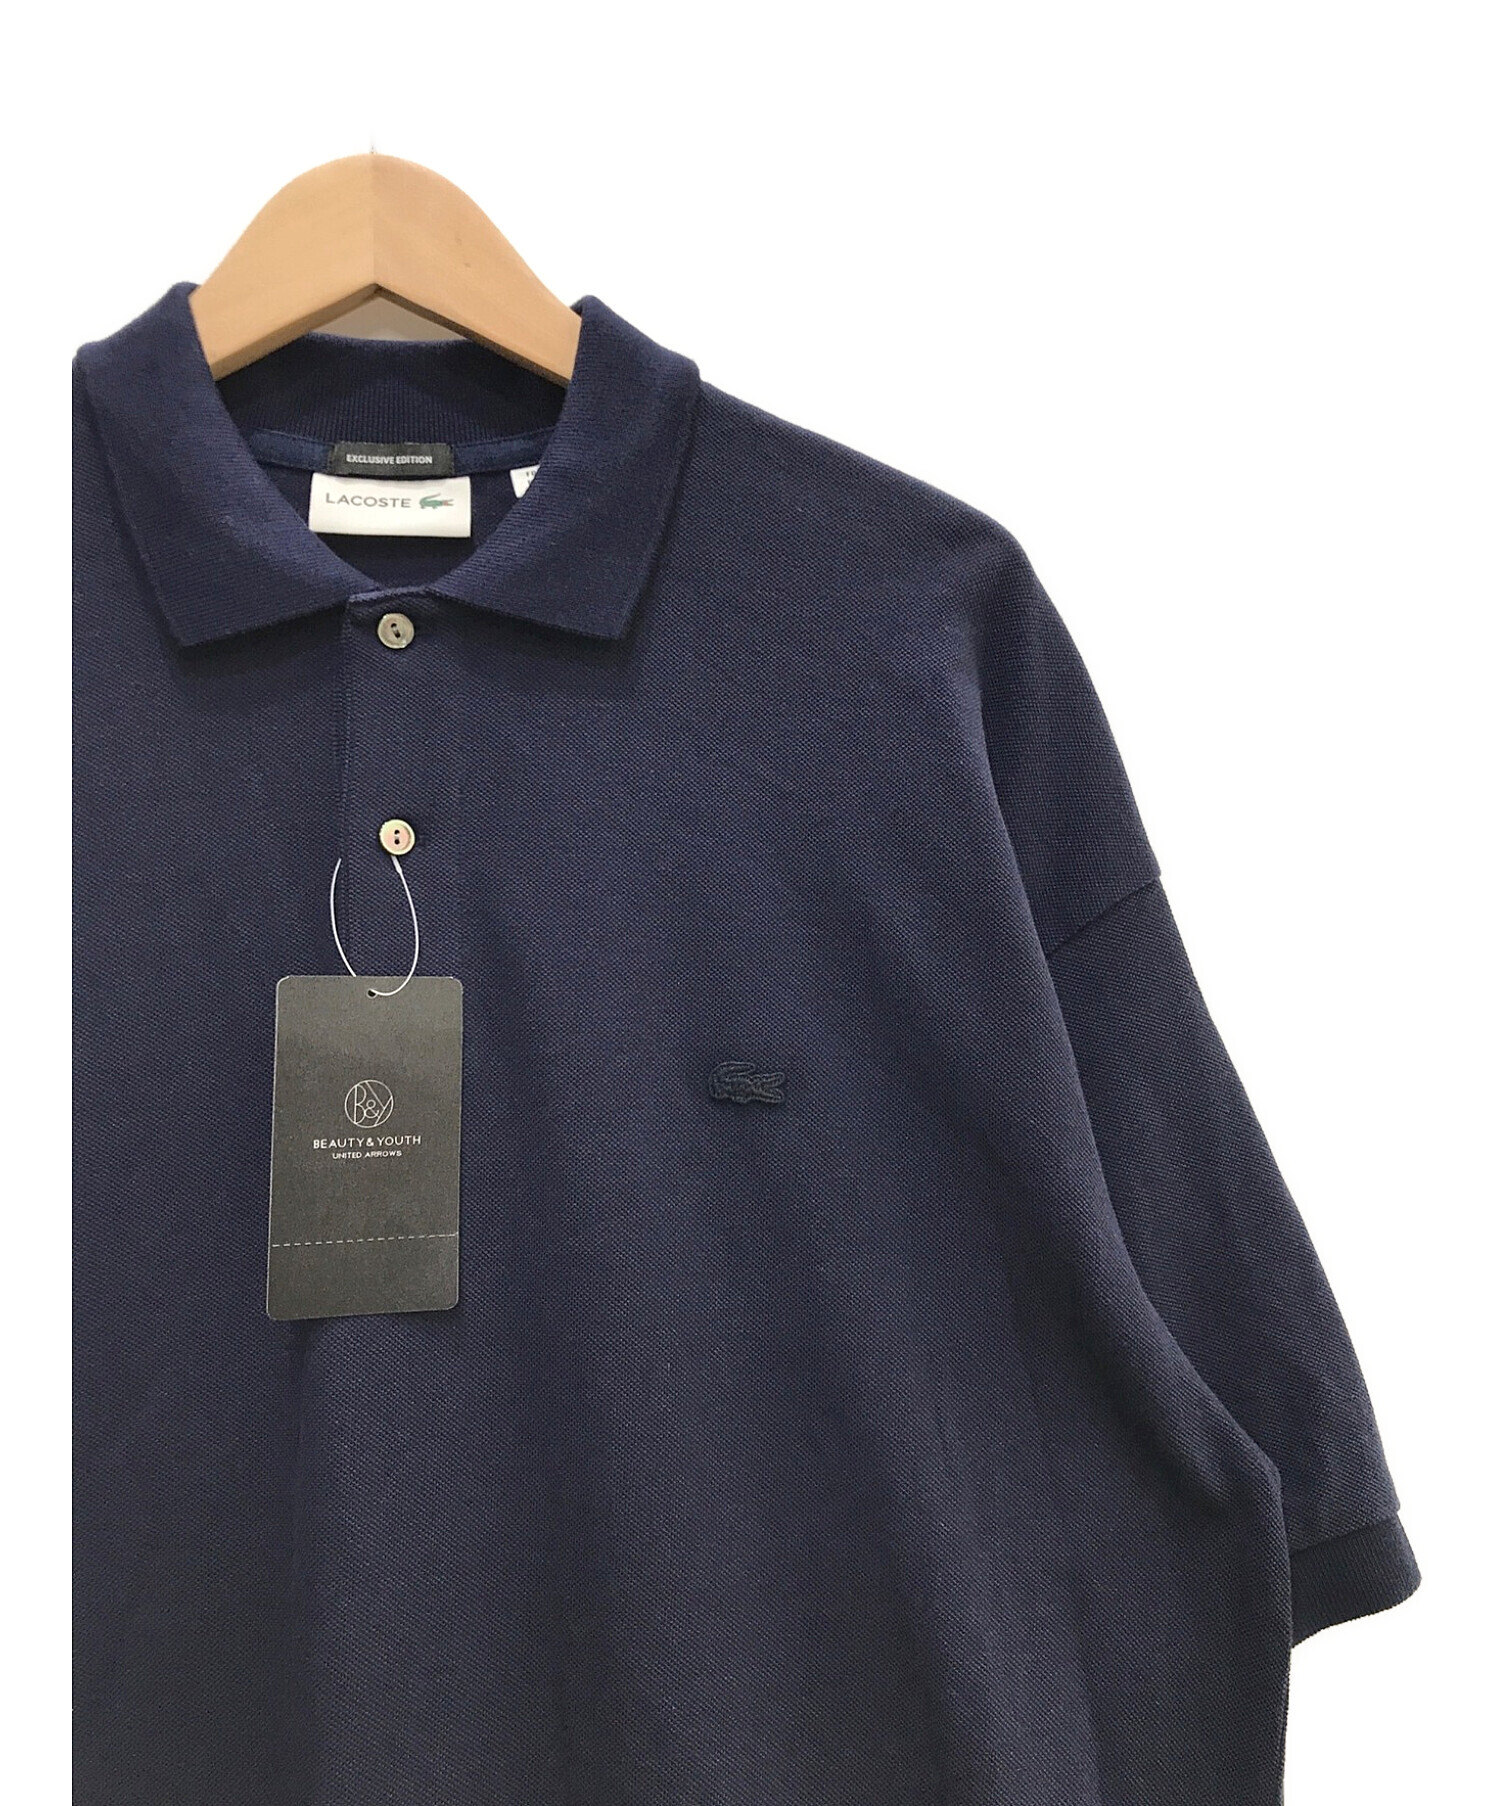 選ぶなら ラコステ 七分袖 ポロシャツ ネイビー 紺 サイズ38 新品・未使用品 日本製 - heirloomedblog.com